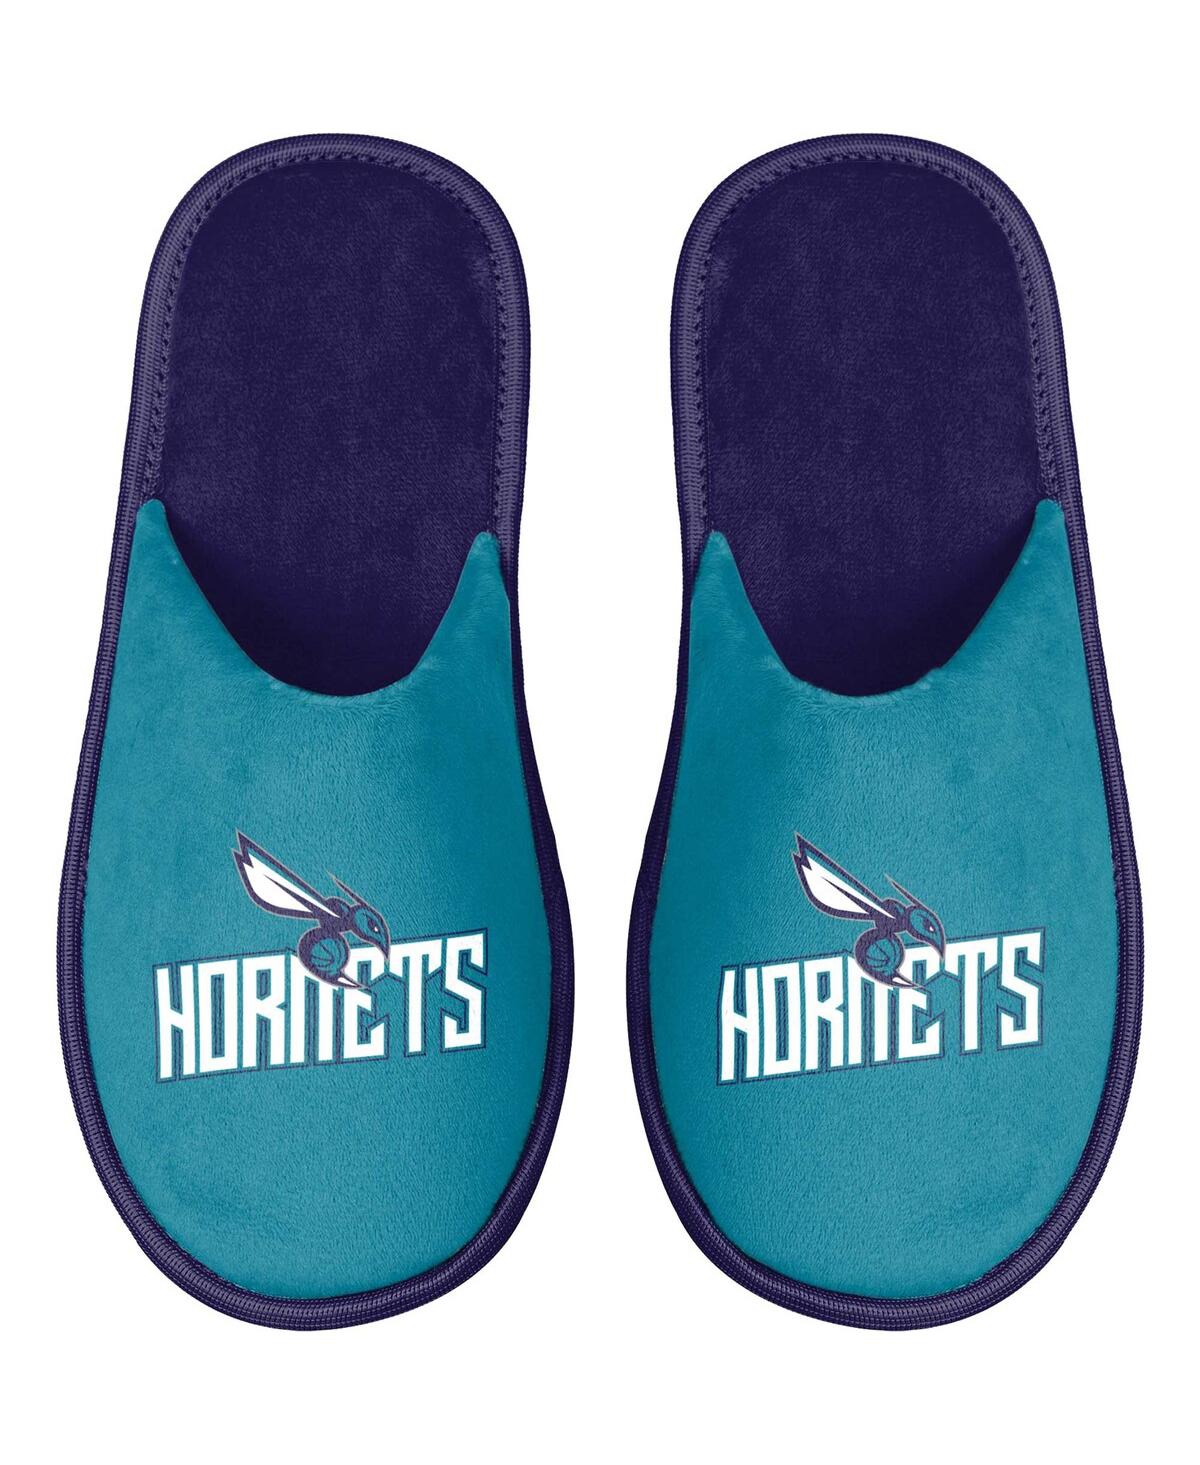 Men's Charlotte Hornets Scuff Slide Slippers - Teal